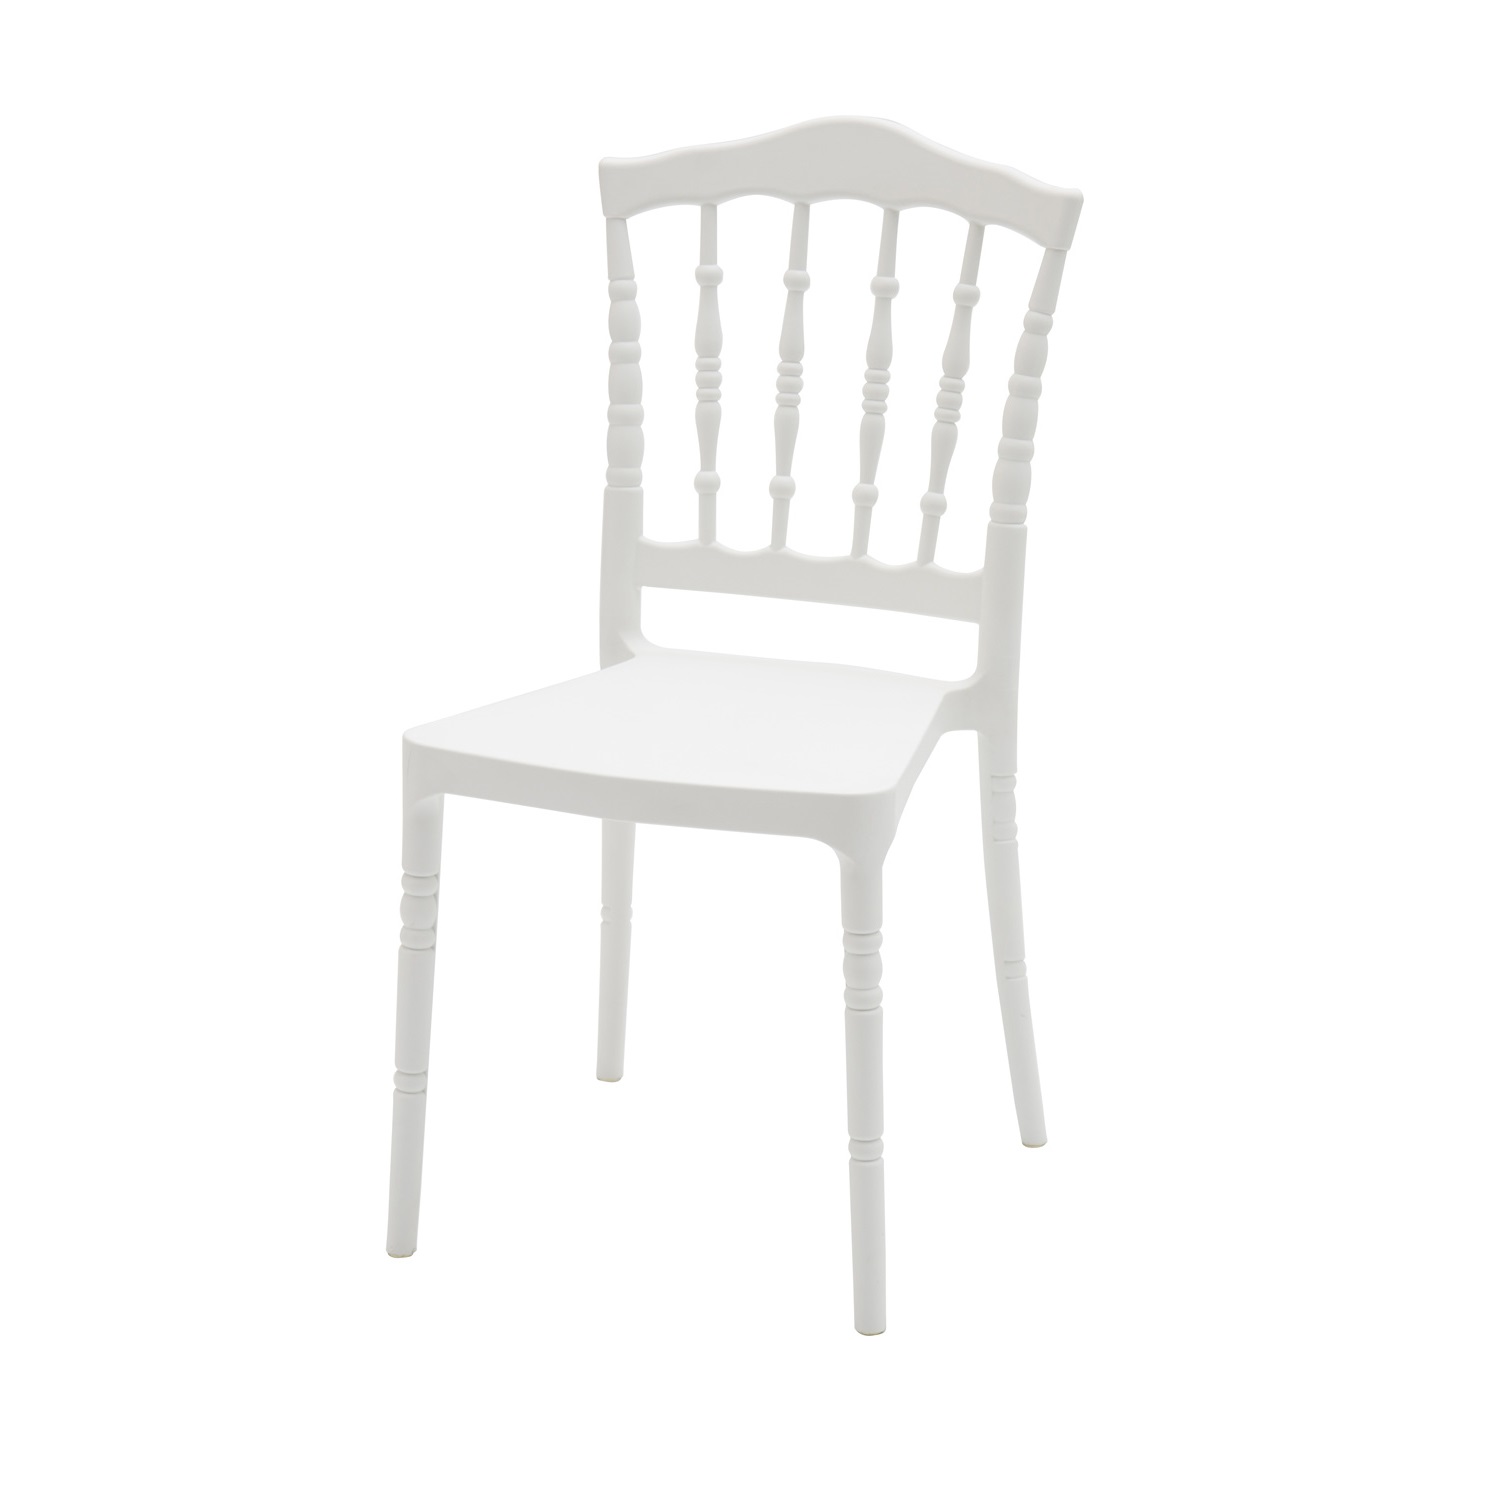 Sedia in Polipropilene Colore Bianco 6 Pezzi